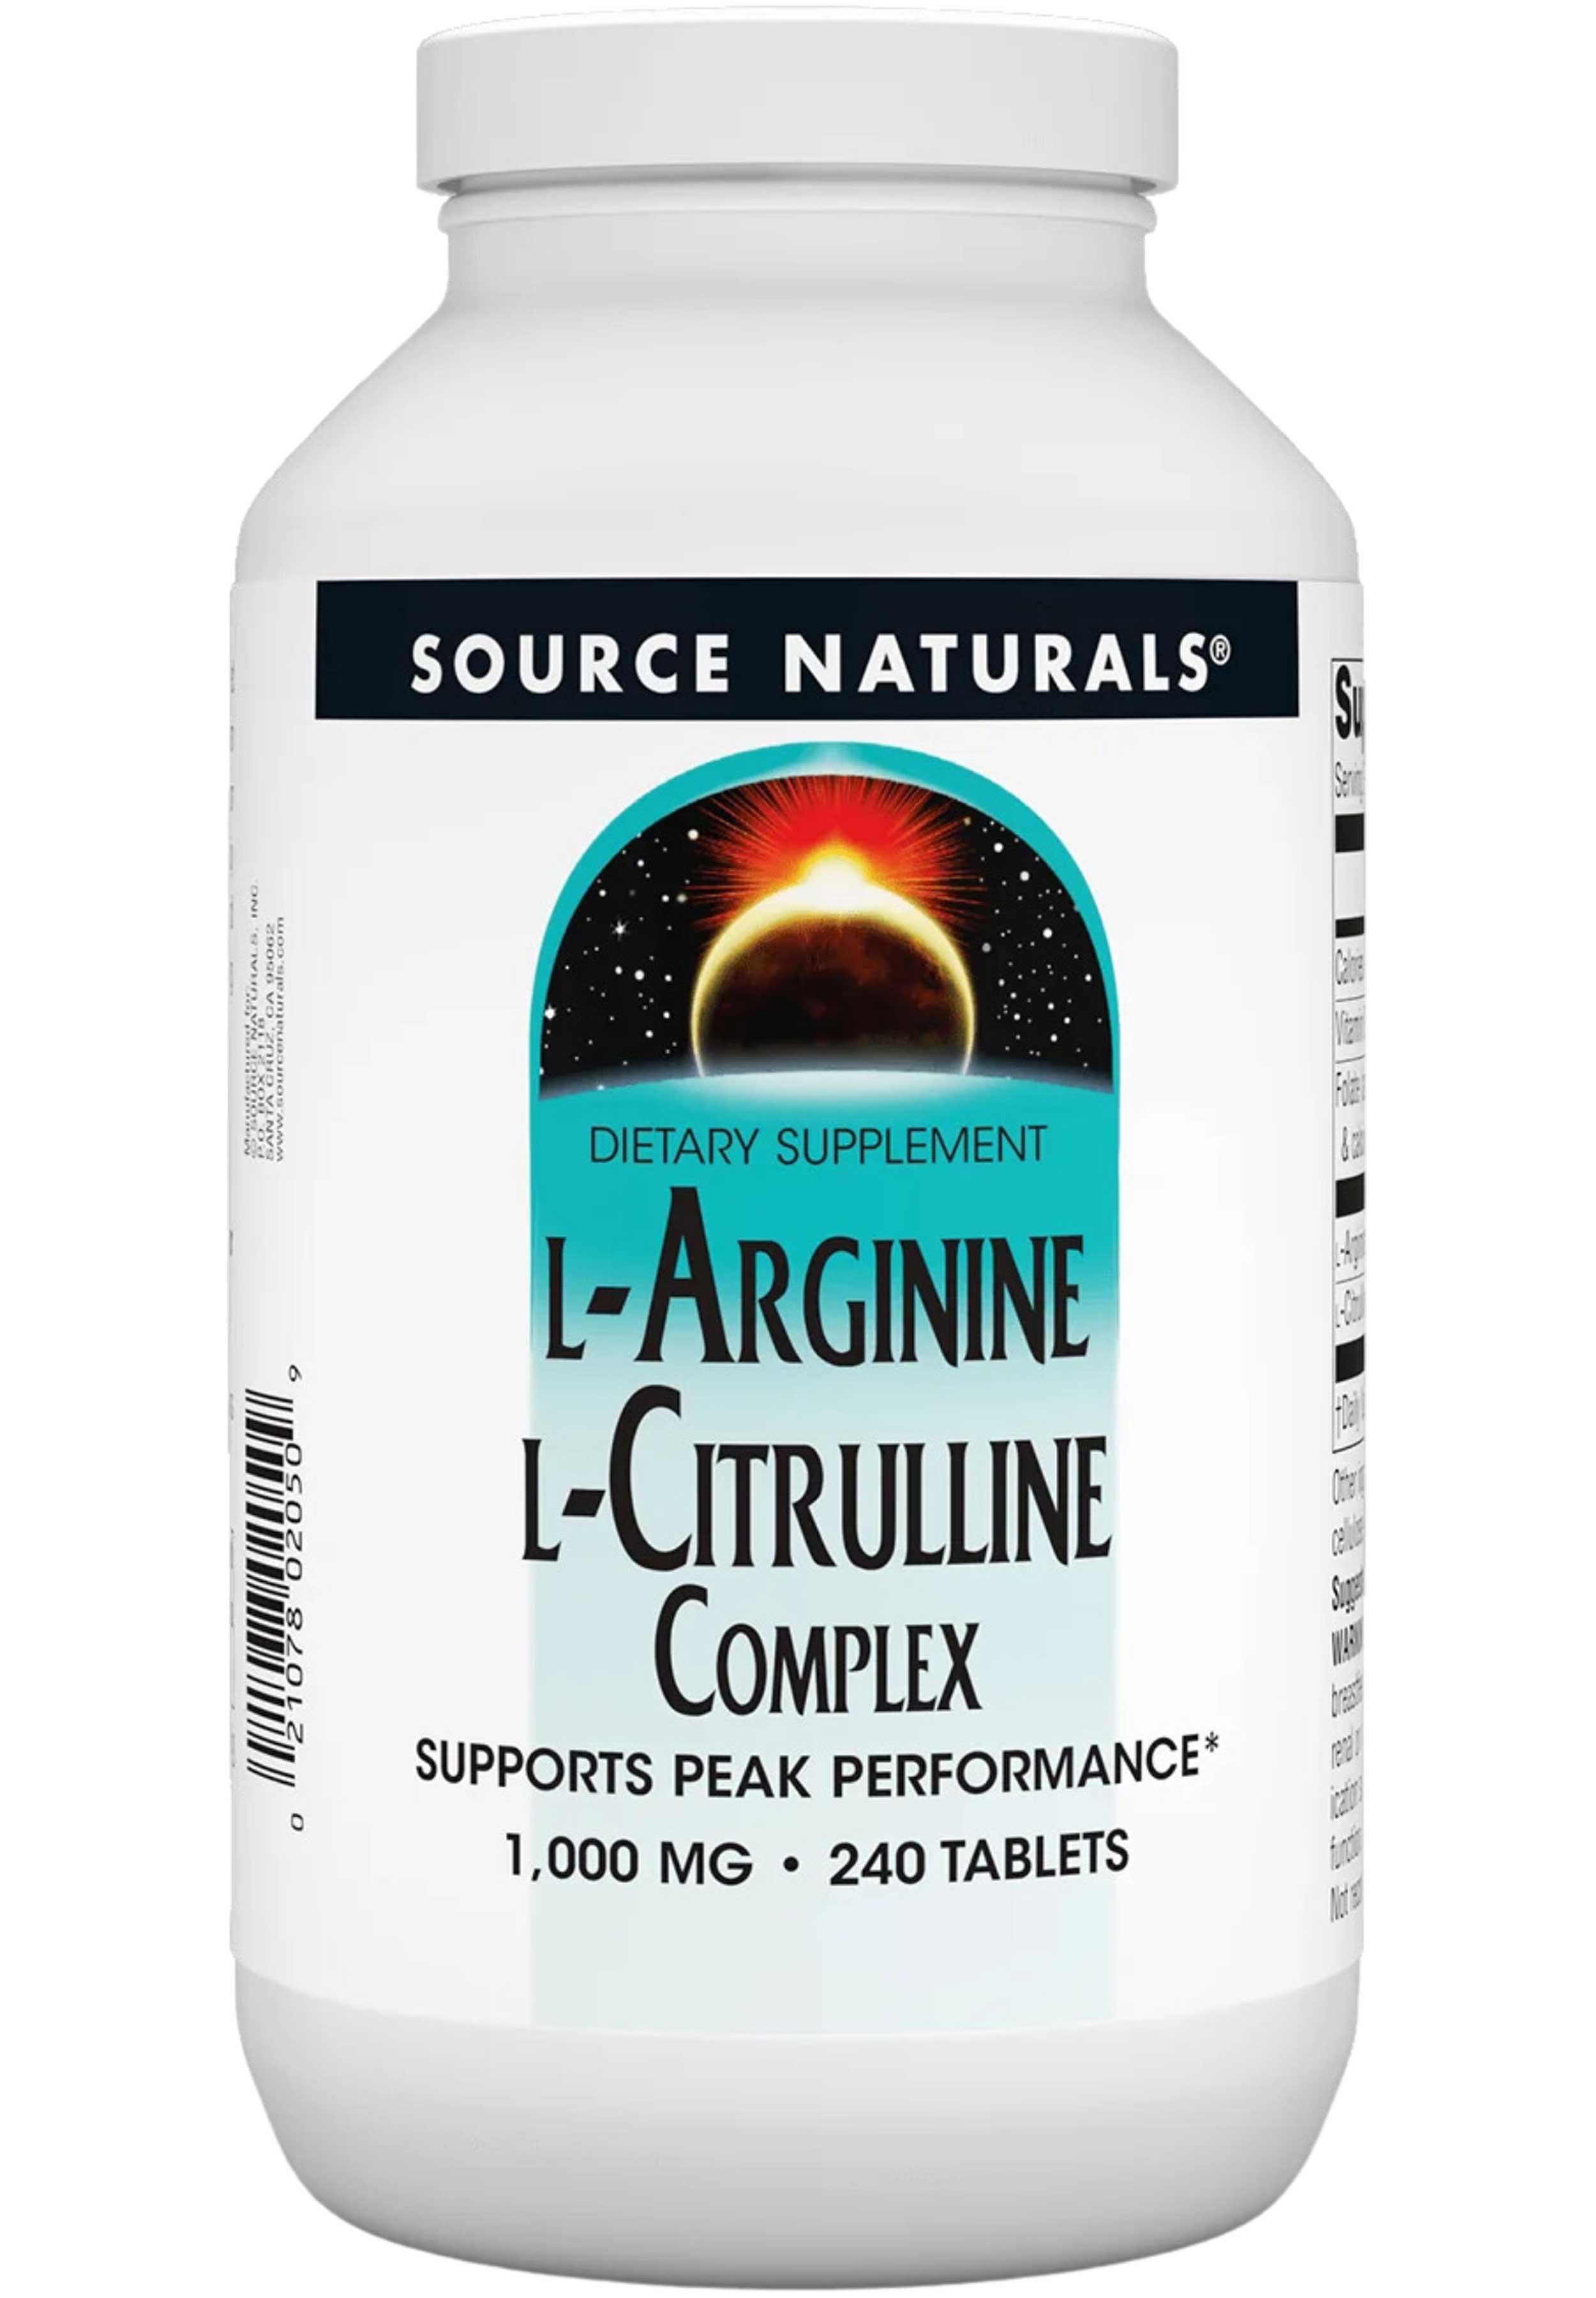 Source Naturals L-Arginine L-Citrulline Complex